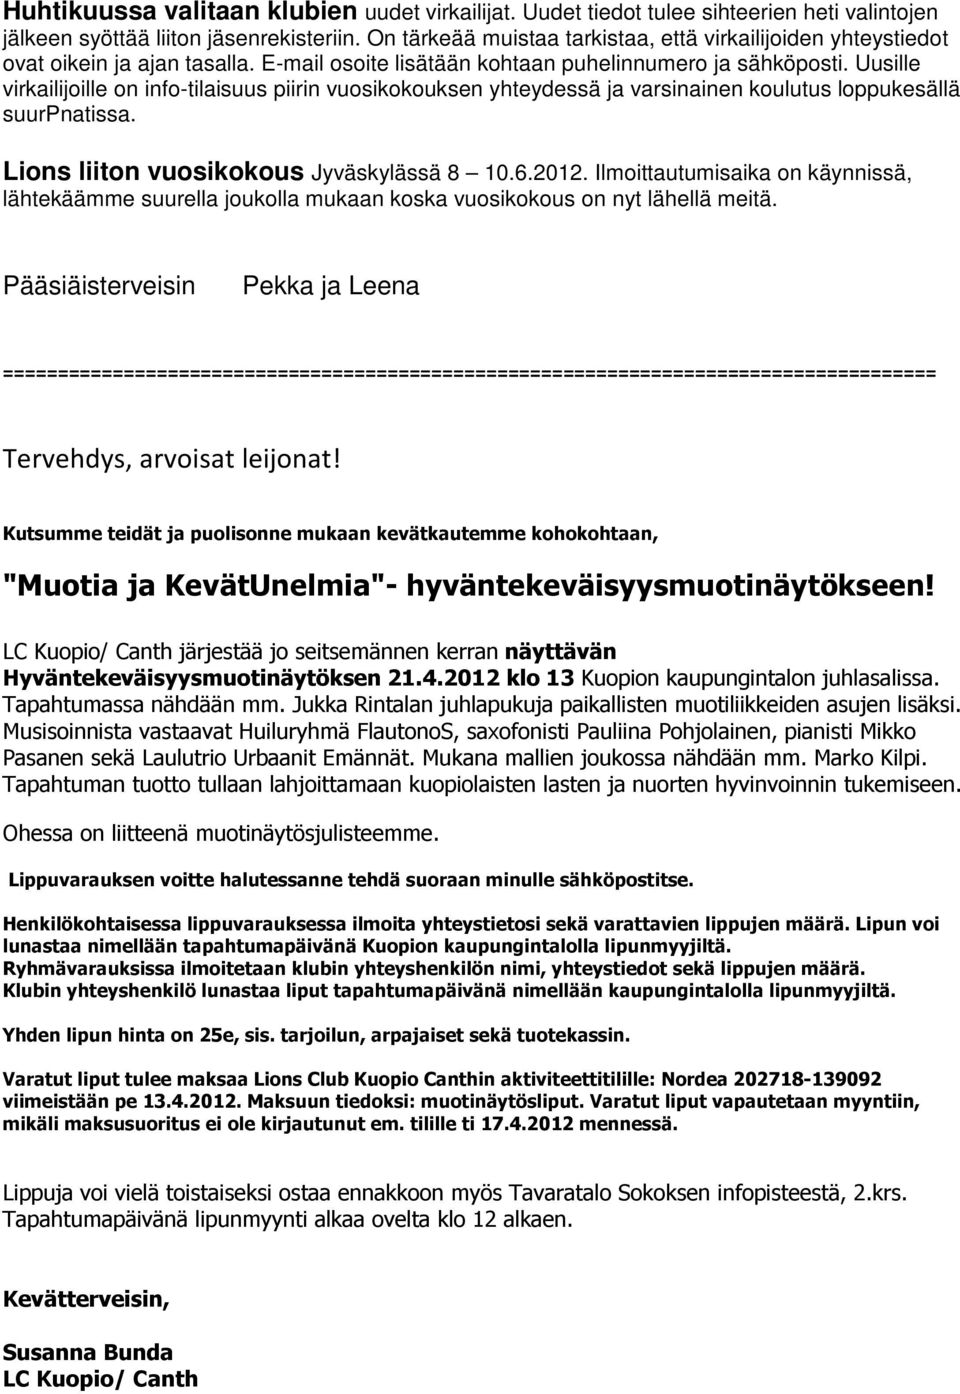 Uusille virkailijoille on info-tilaisuus piirin vuosikokouksen yhteydessä ja varsinainen koulutus loppukesällä suurpnatissa. Lions liiton vuosikokous Jyväskylässä 8 10.6.2012.